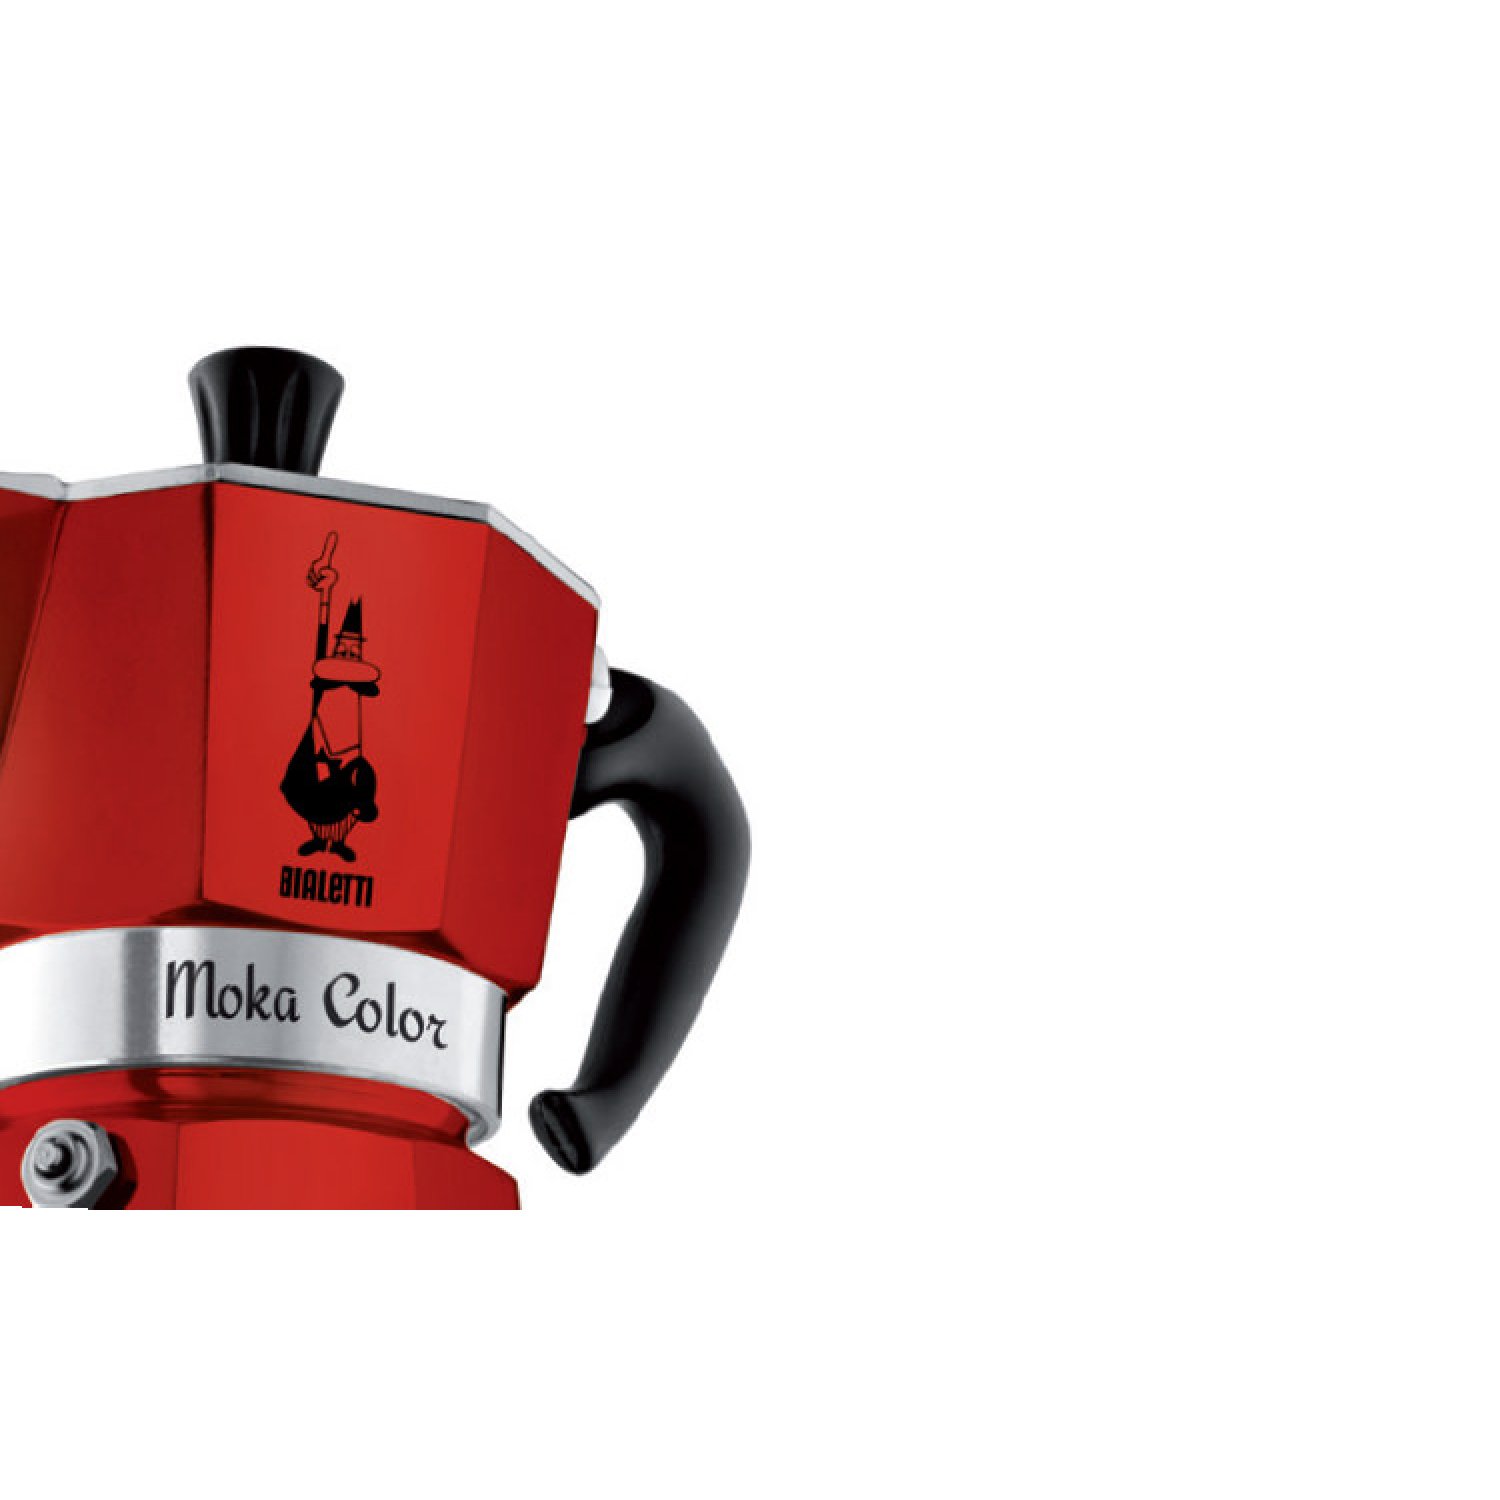 Bialetti 6 Cup Moka Stovetop Espresso Maker, Red 8006363018395